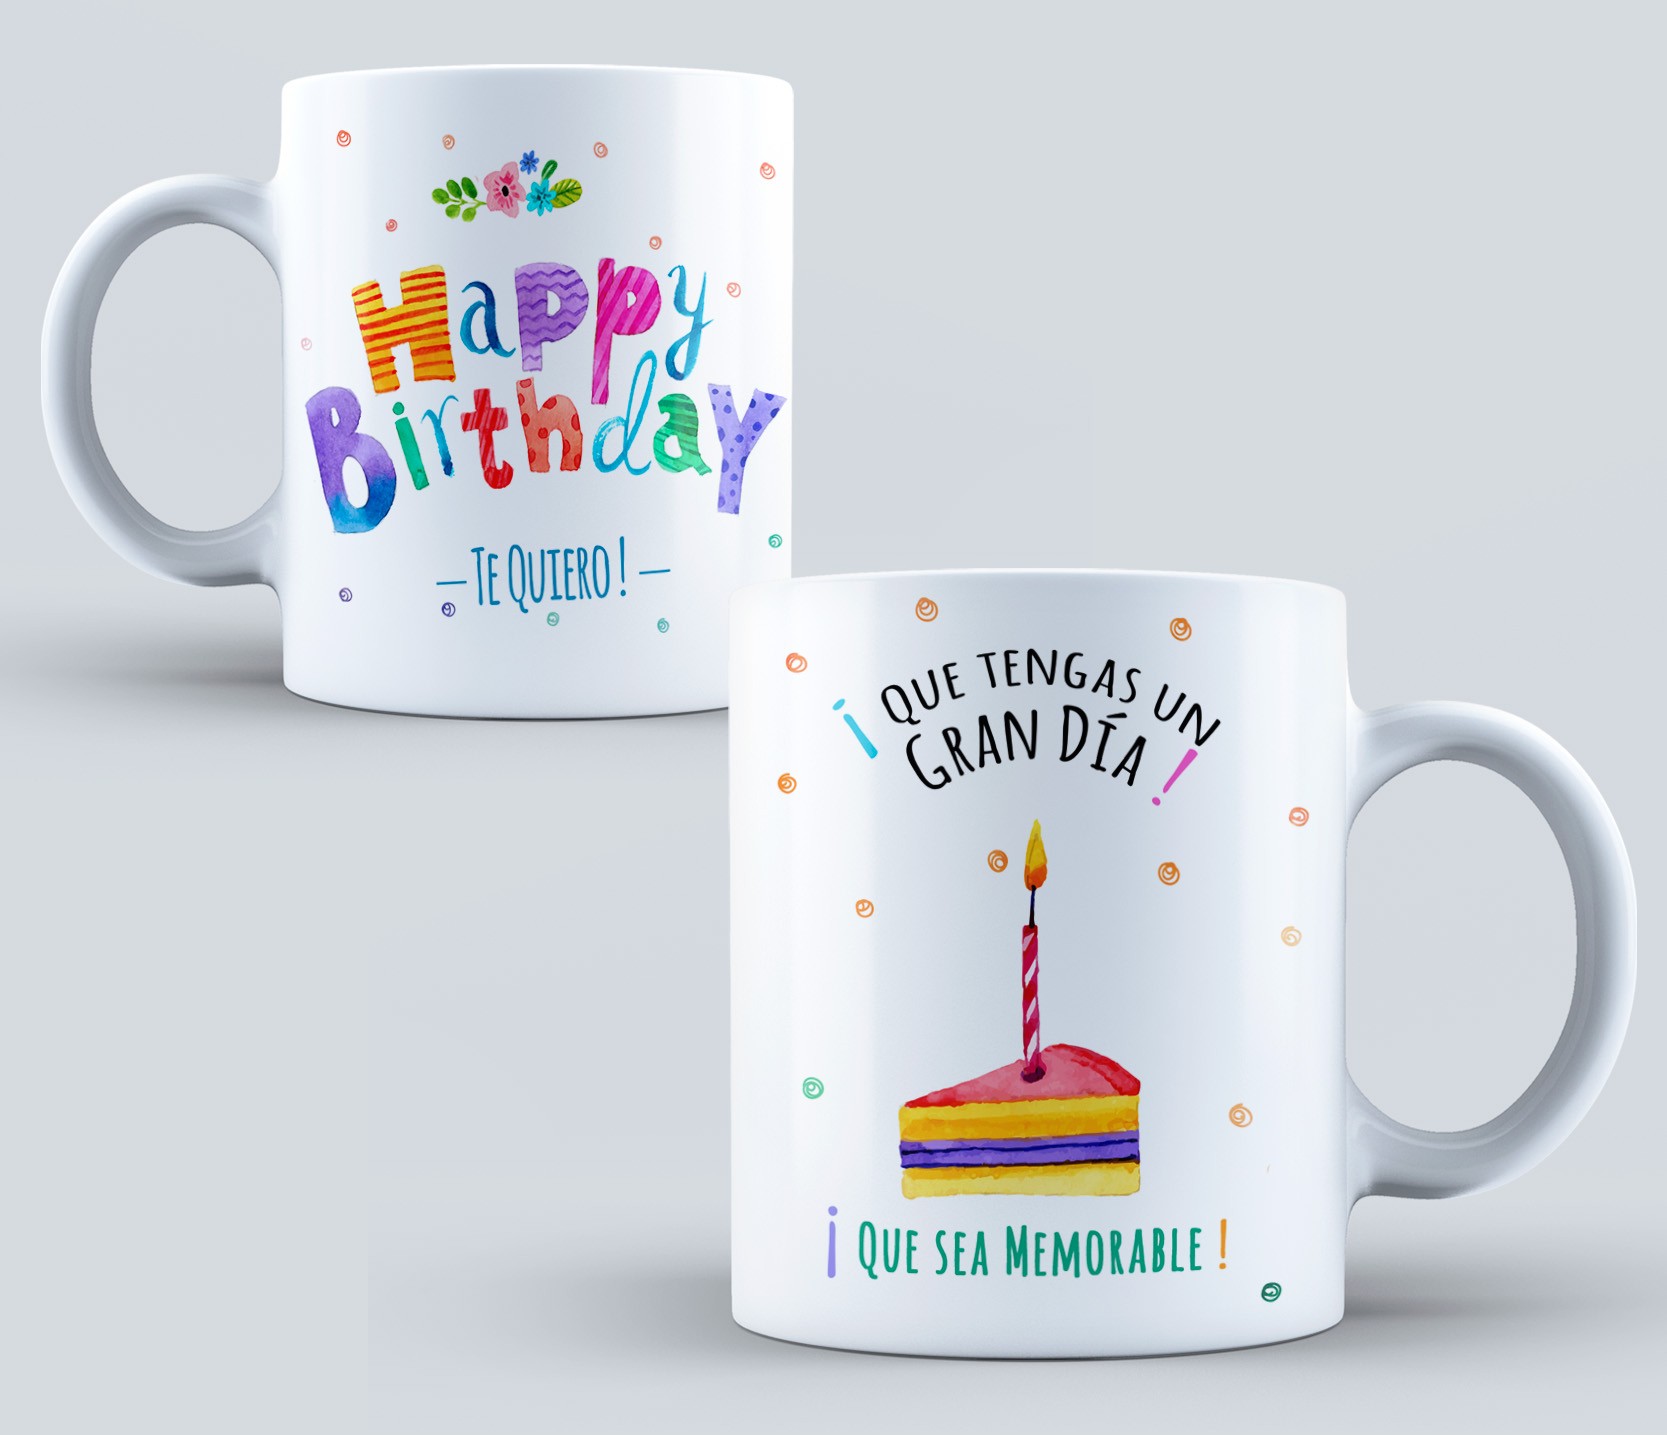 Taza de regalo para cumpleaños – Tazas de café personalizadas con nombre –  Taza de té personalizada para pastel de cumpleaños – Tazas de feliz